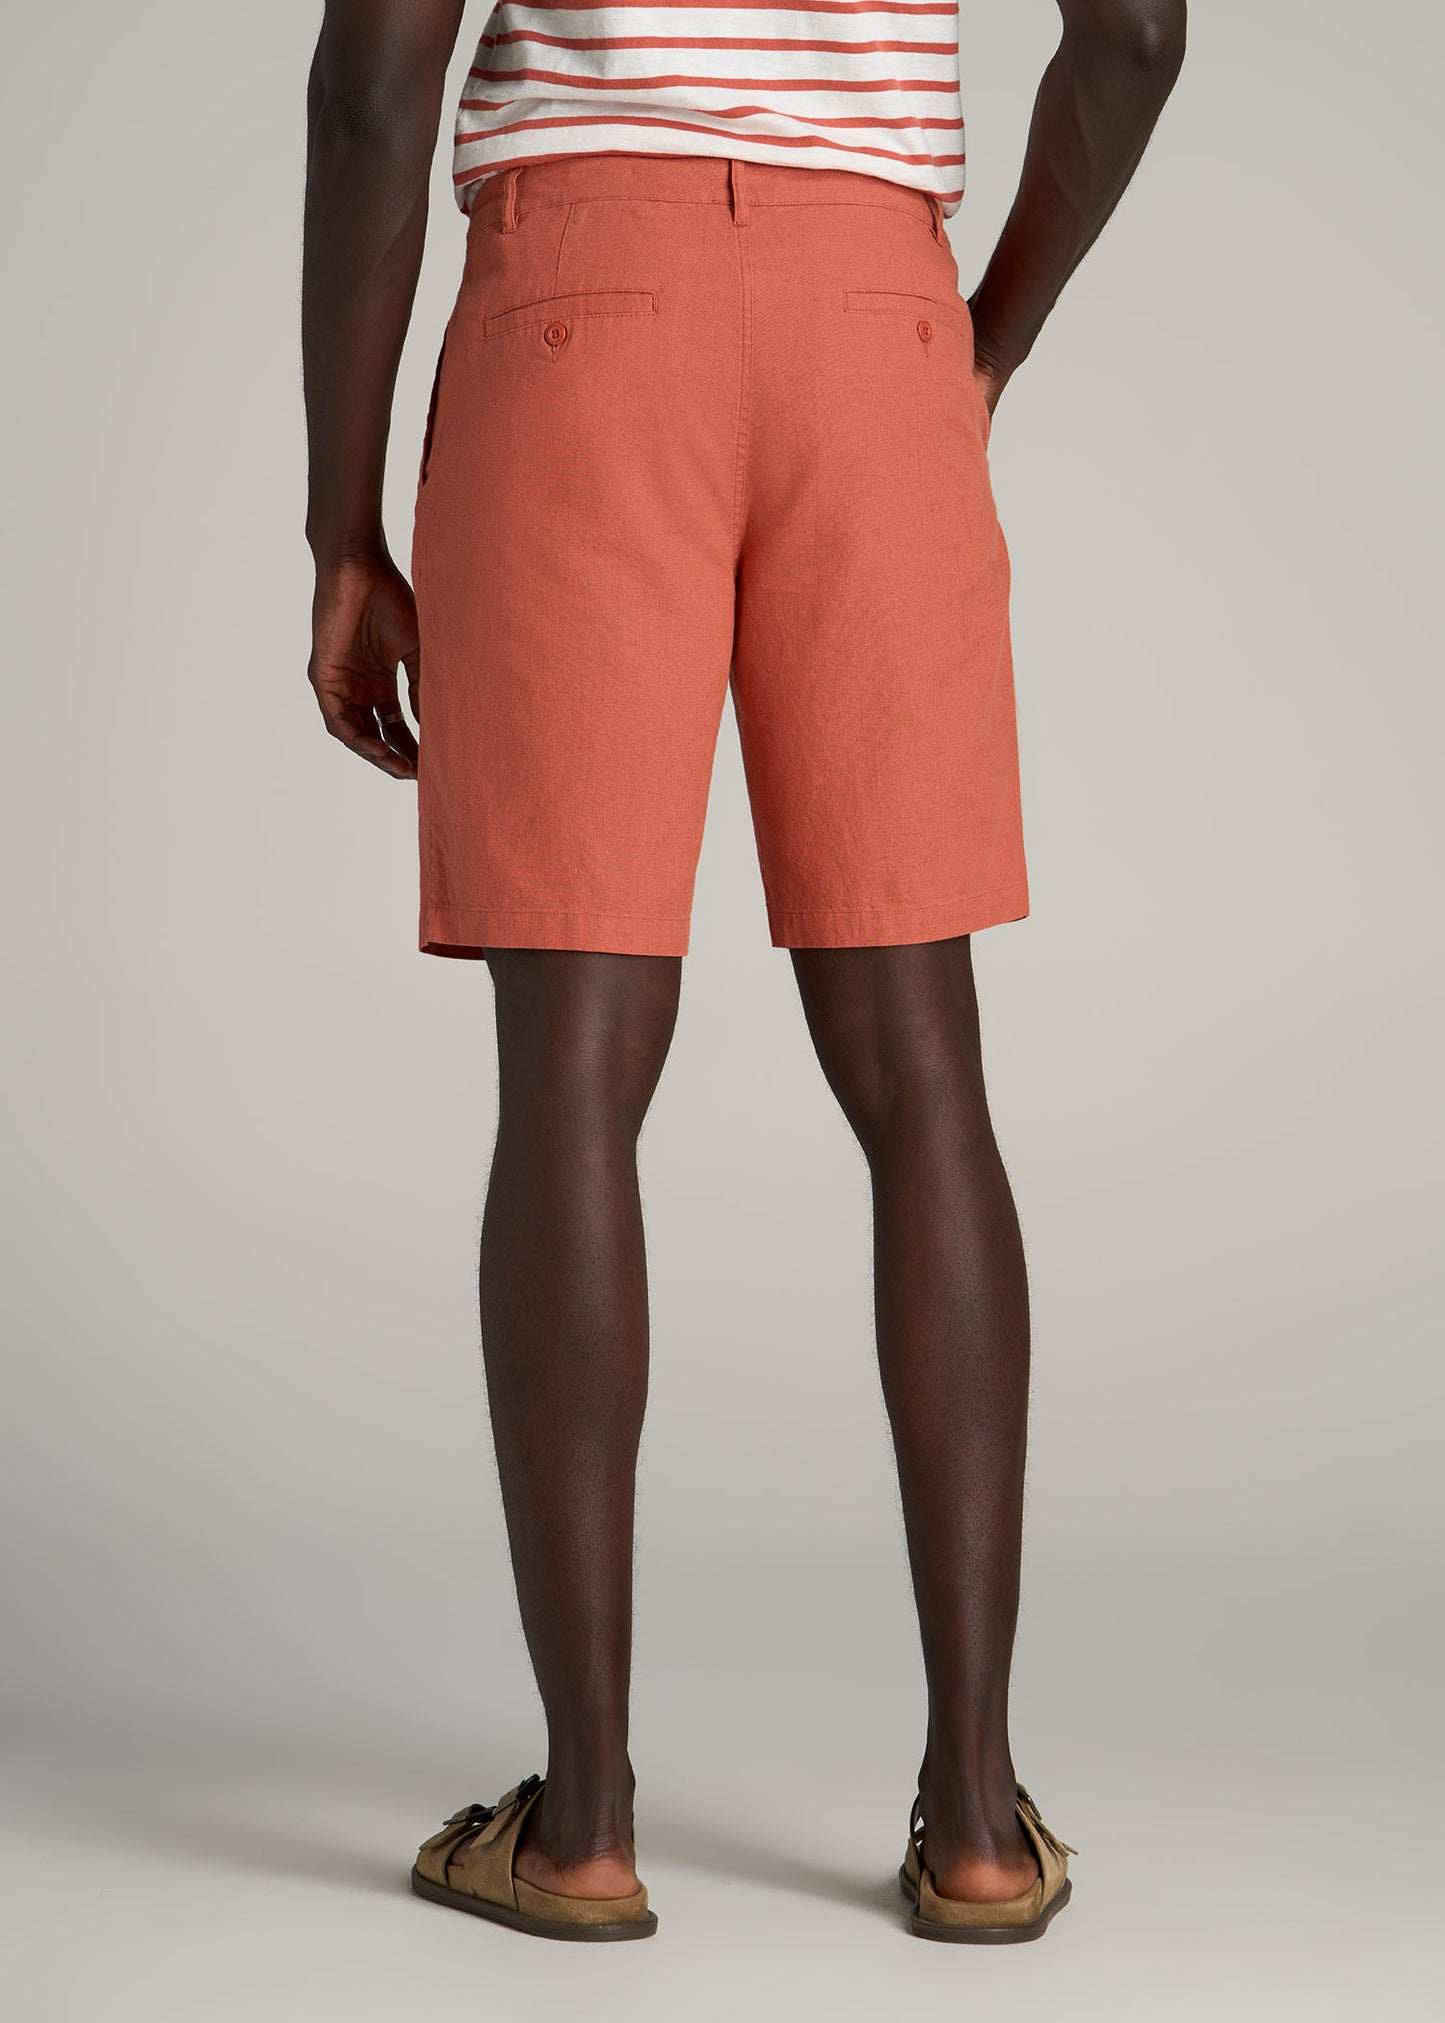 Linen Shorts For Tall Men in Burnt Orange